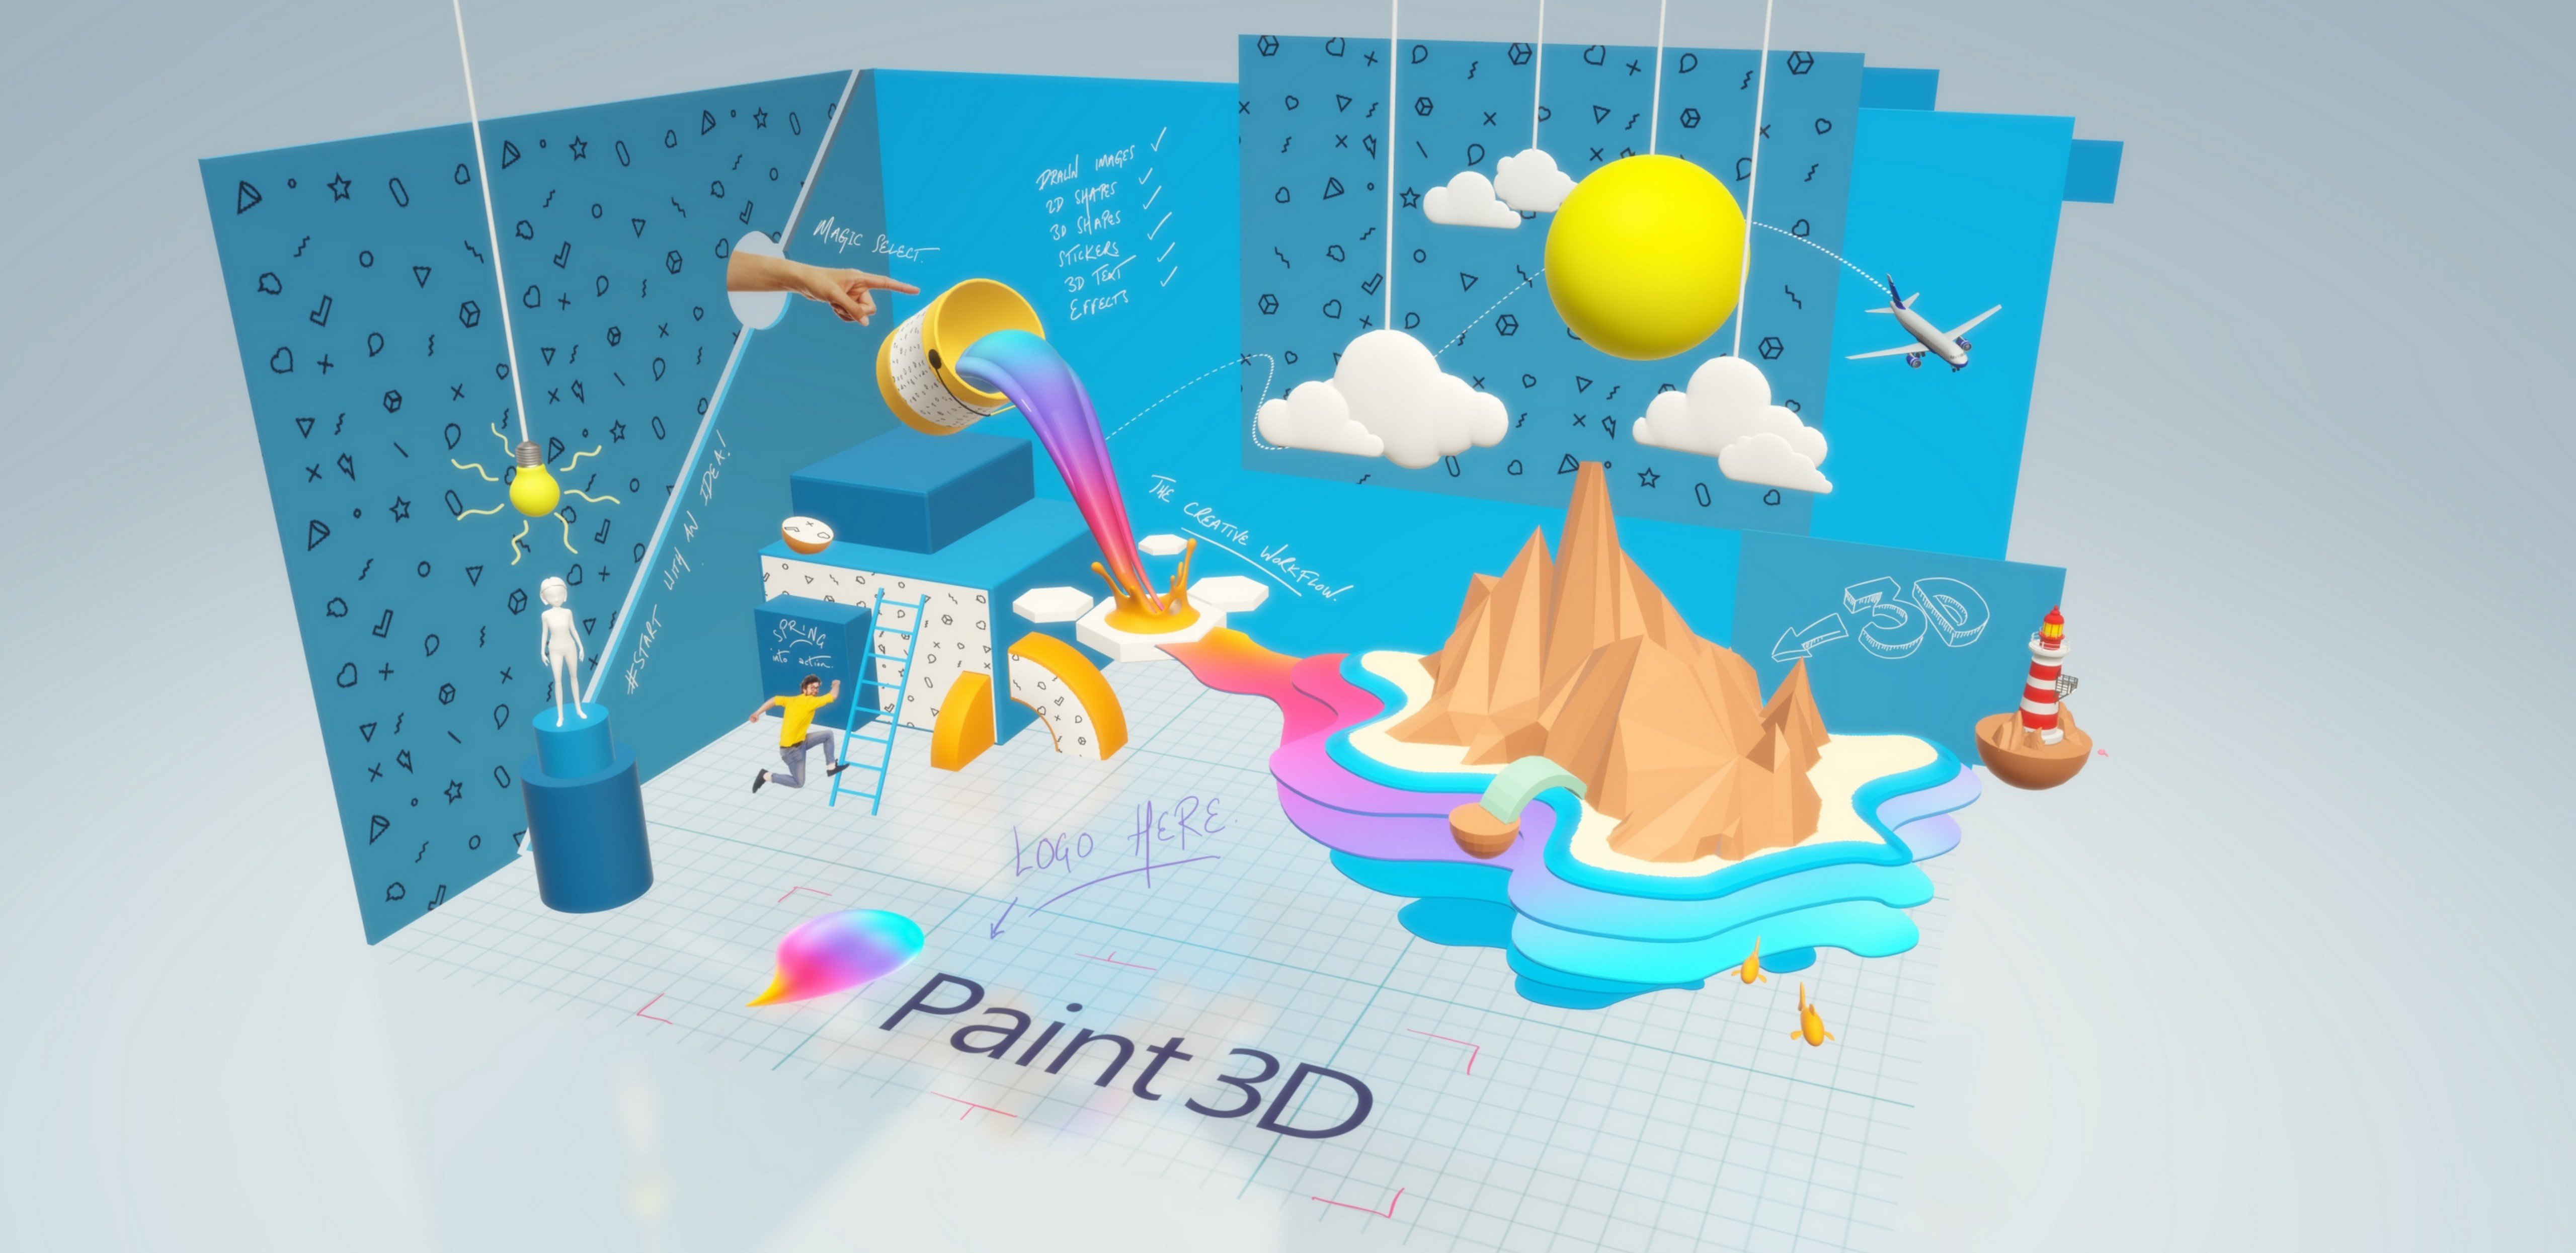 Il successore in grafica 3D